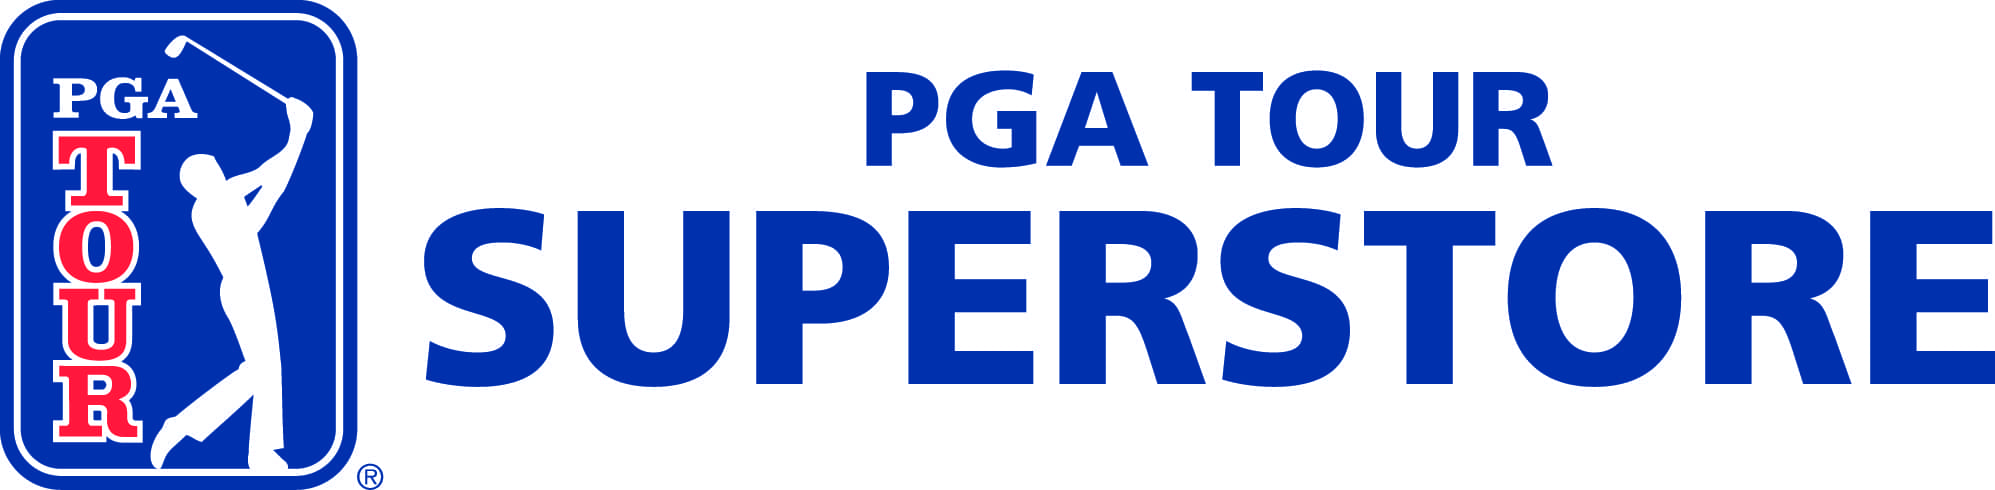 PGA TOUR Superstore Performance Studio